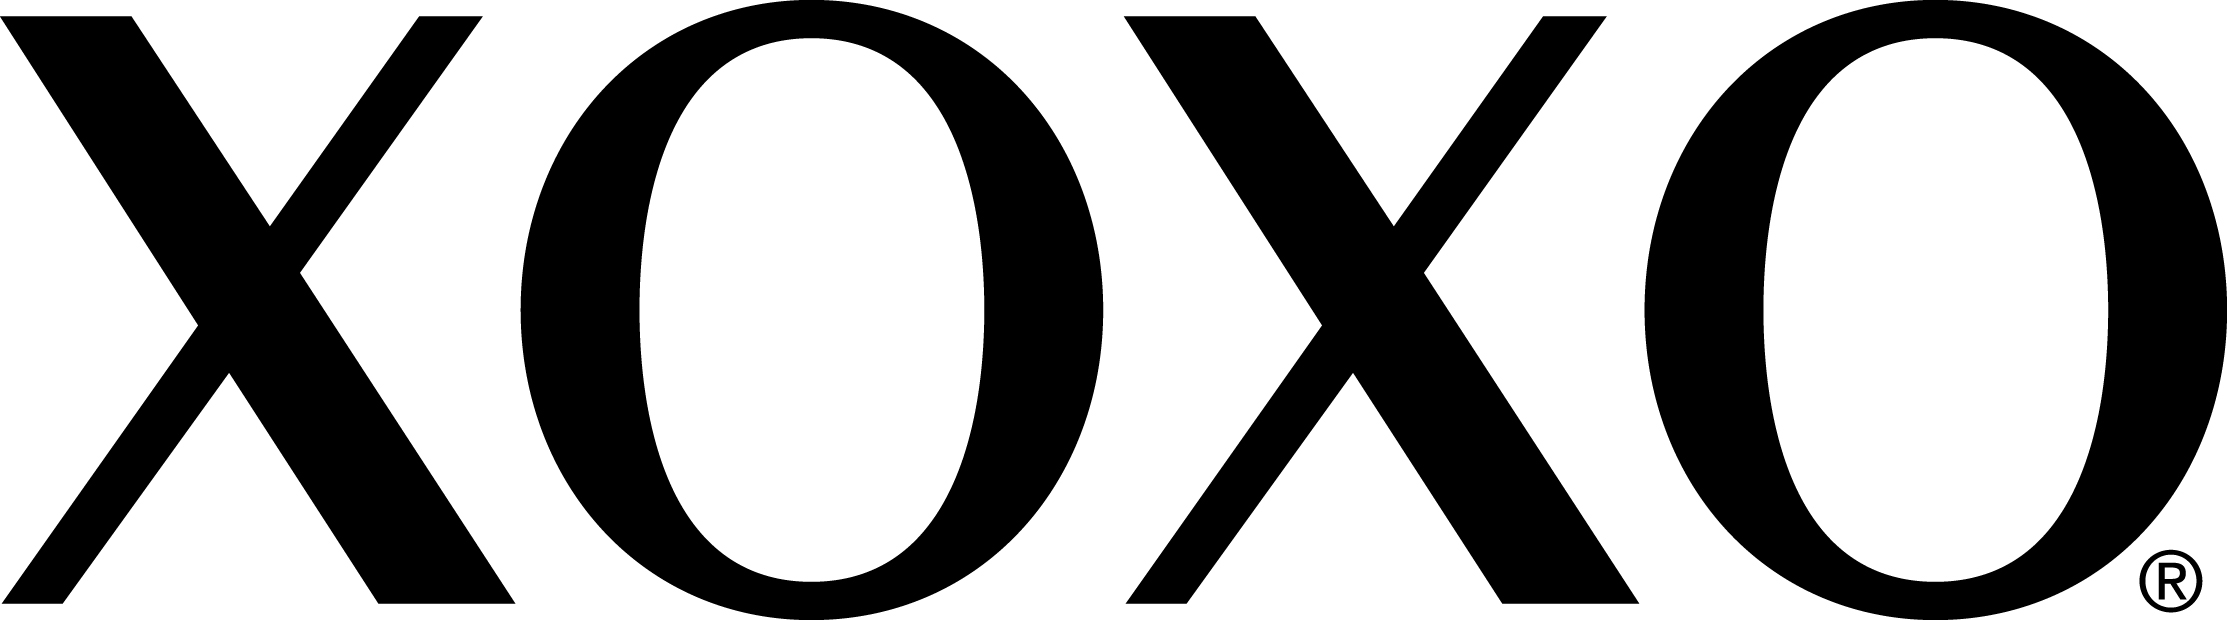 XOXO